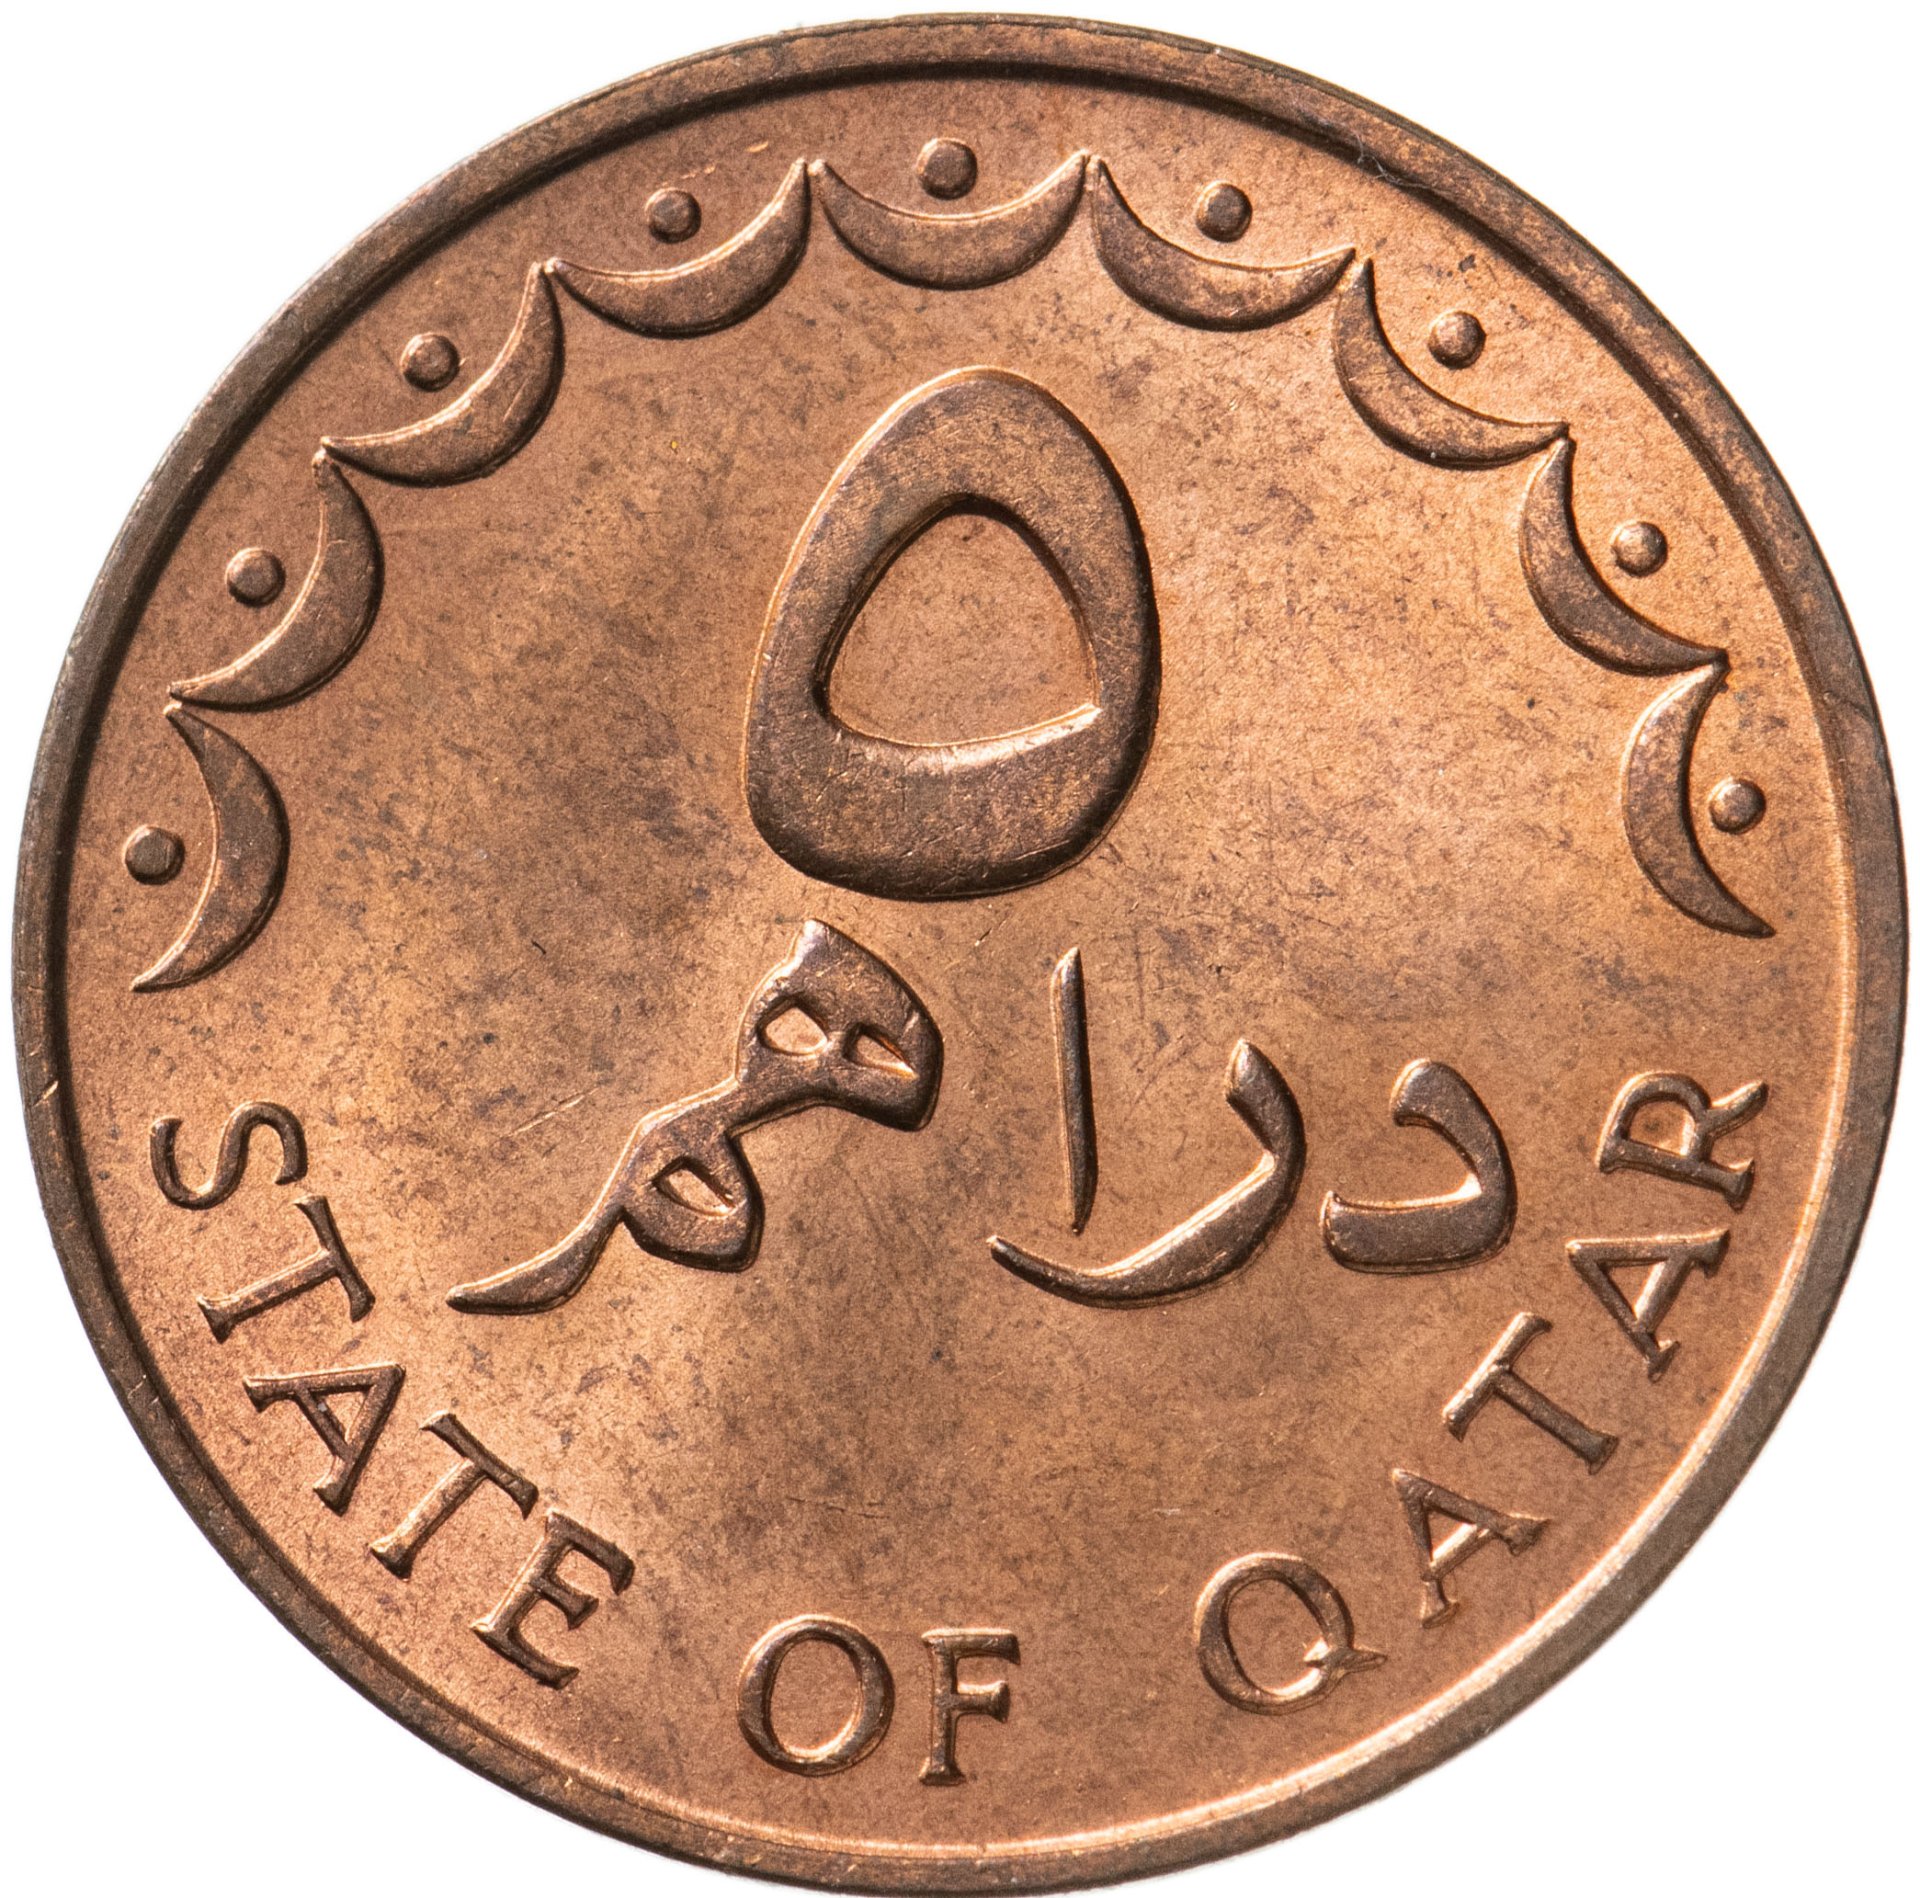 Монеты Катара. Монеты Катара каталог. Миллион марокканских дирхам. 1600 дирхам